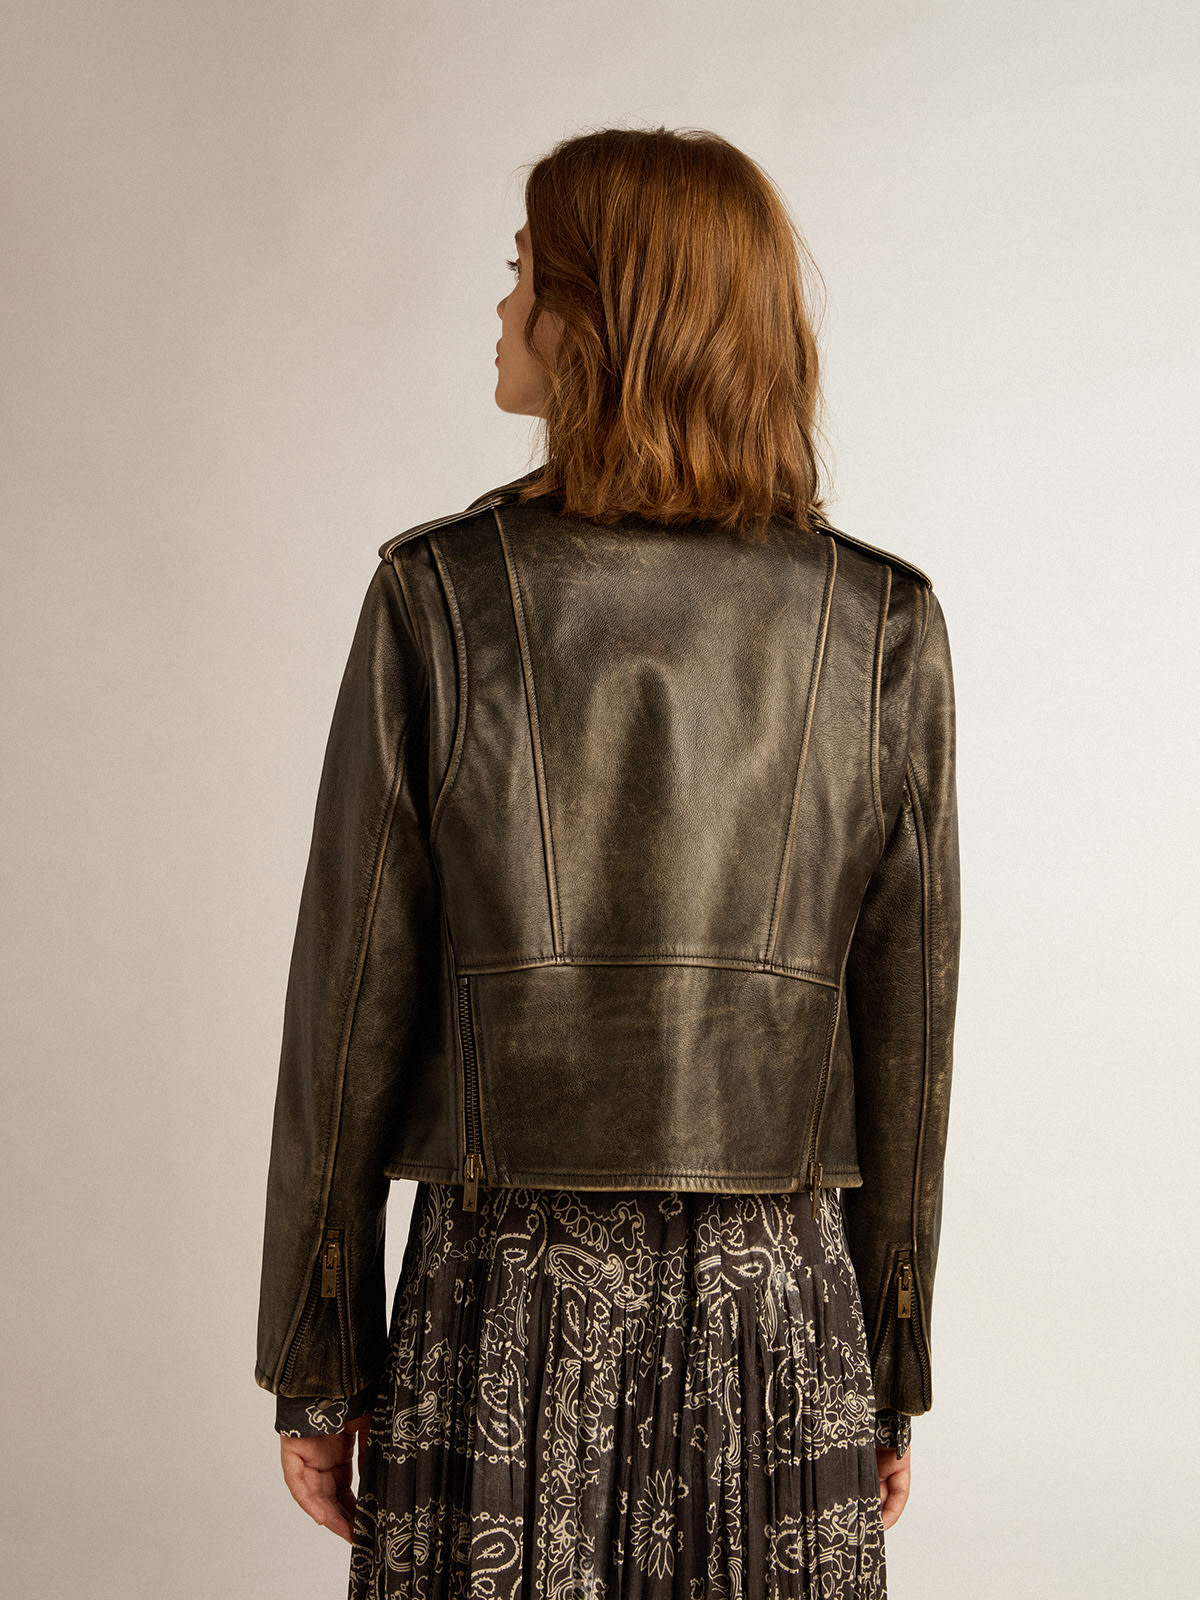 Golden Goose - Women’s biker jacket in distressed leather in 